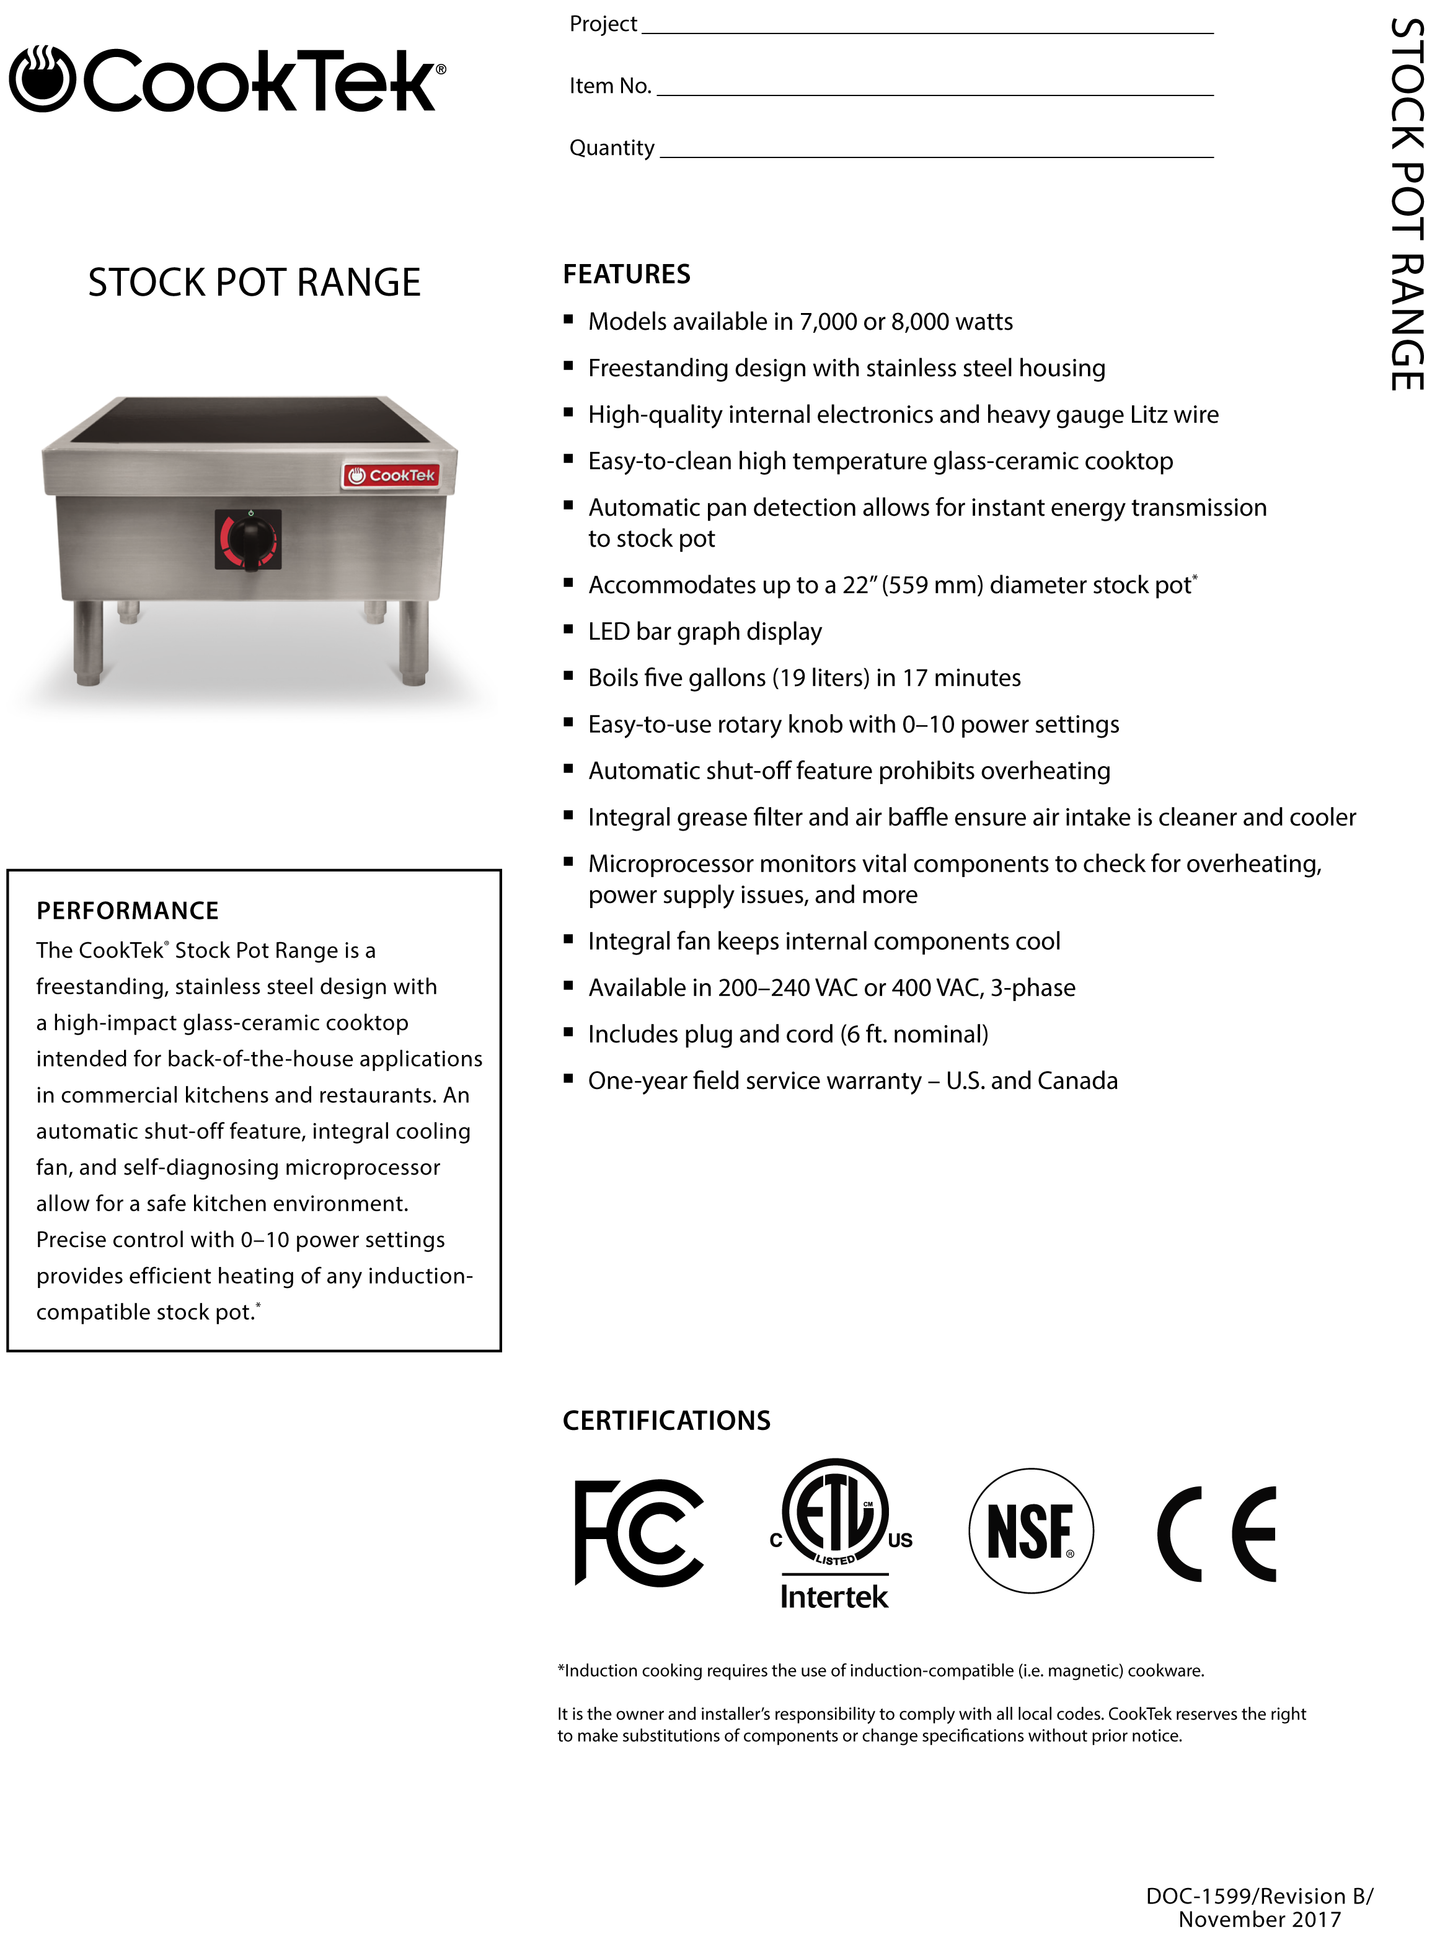 Induction Stock Pot Range